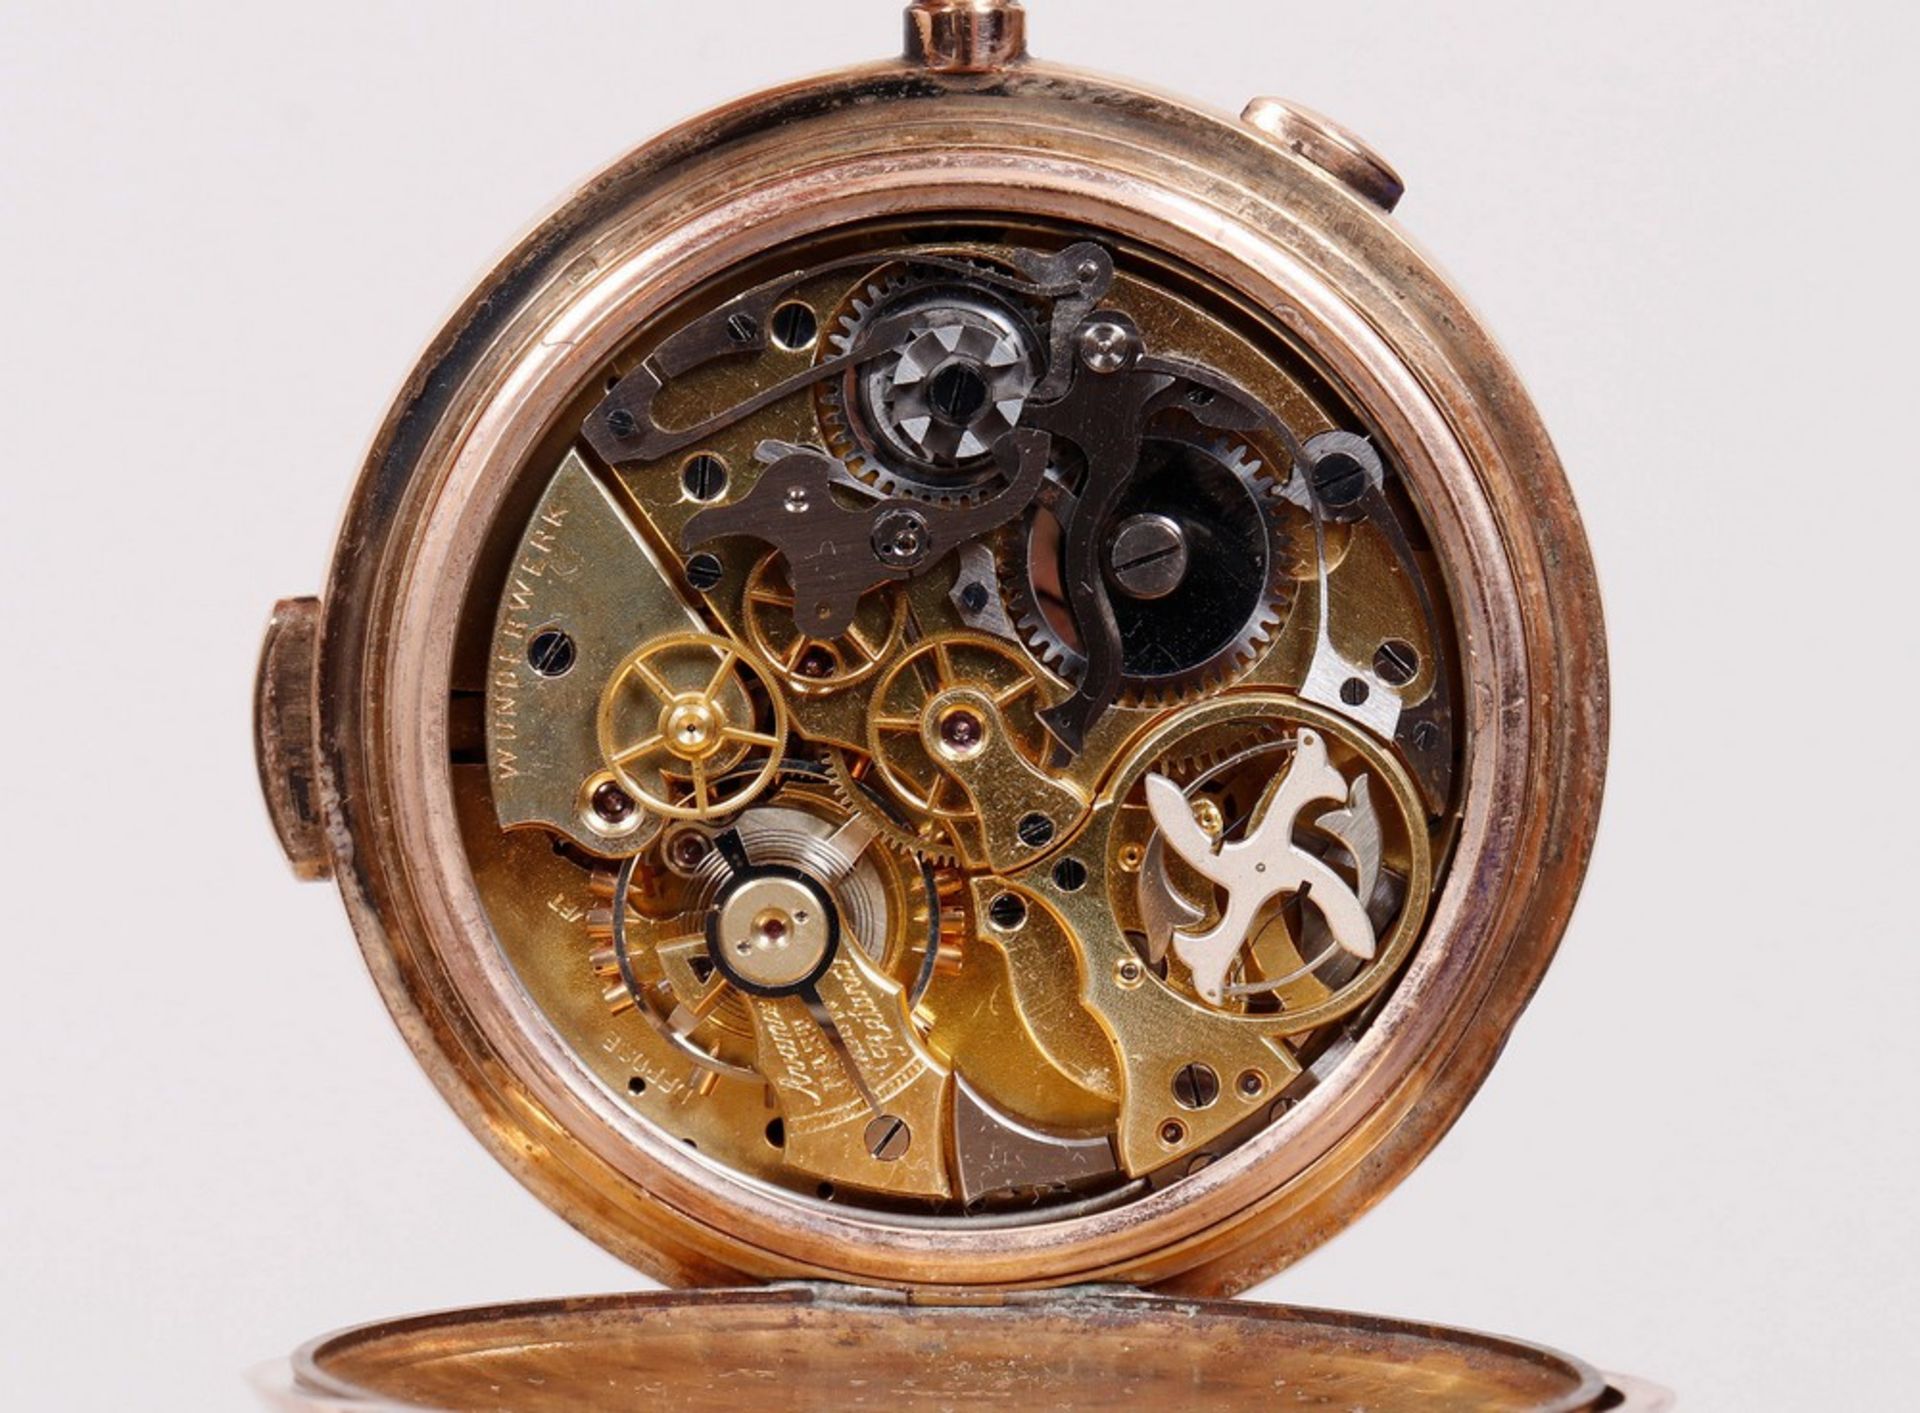 Taschenuhr mit Repetition und Stoppuhr, 585 Gold, Wunderwerk I, um 1900 - Bild 4 aus 7